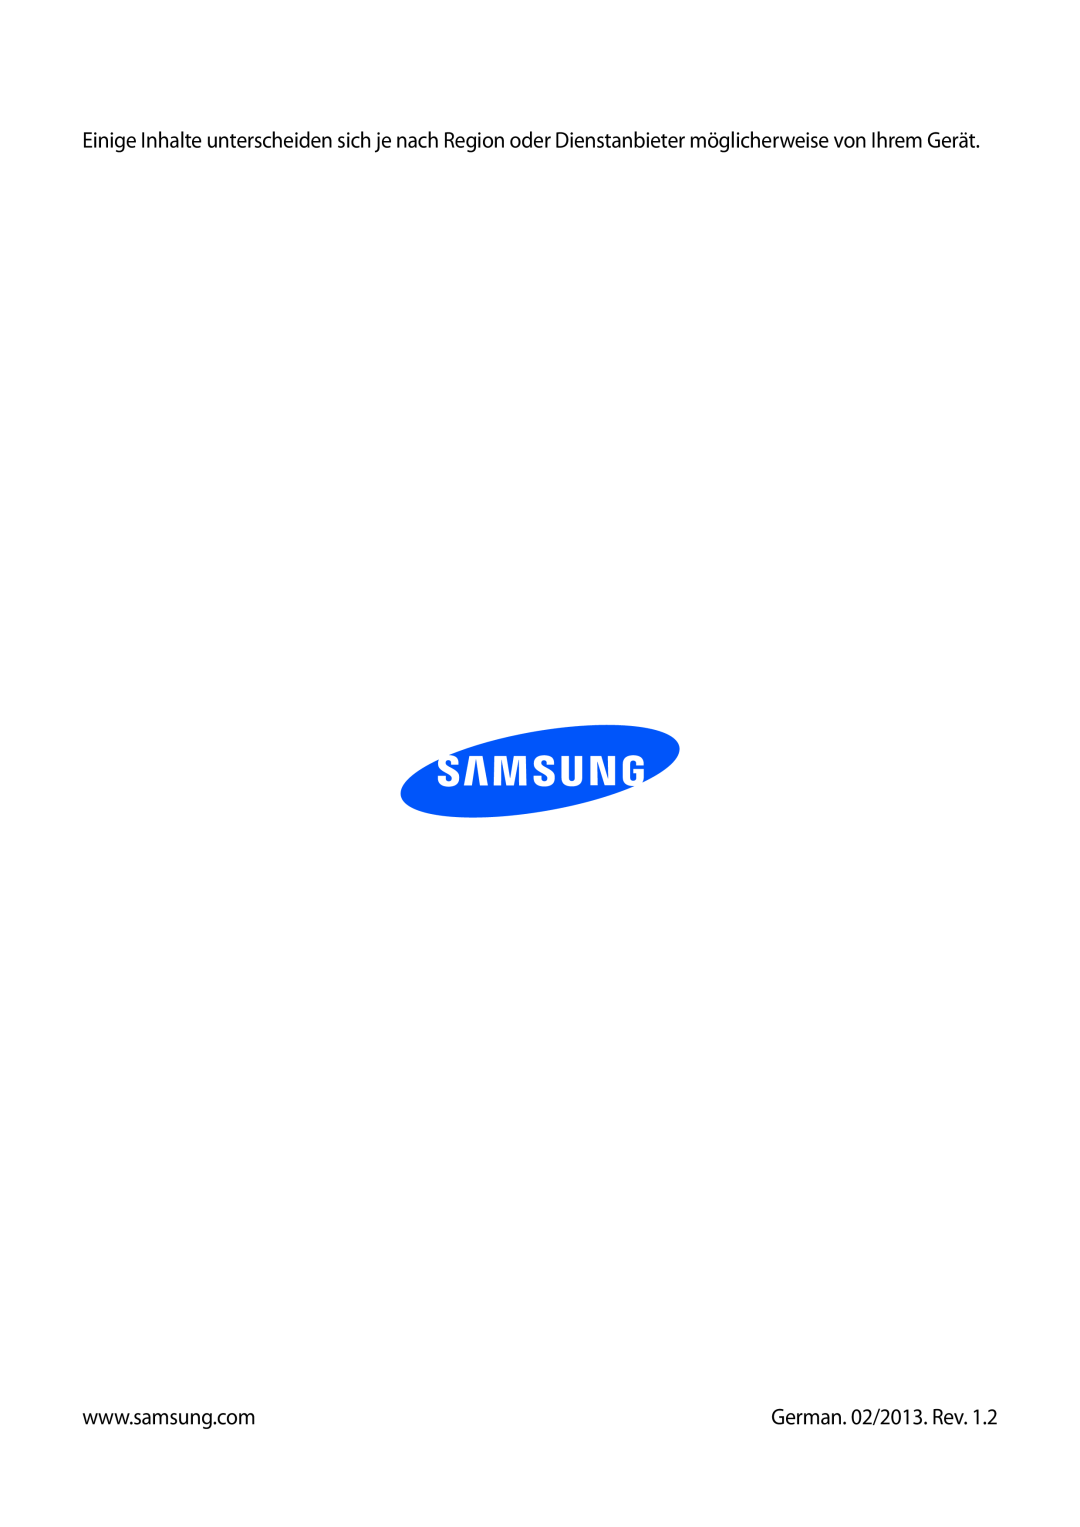 Samsung GT-N7100RWDATO, GT-N7100ZNDTUR, GT-N7100ZBDTUR, GT-N7100TAXDBT, GT-N7100RWDXEO, GT-N7100RWDTPH German. 02/2013. Rev 